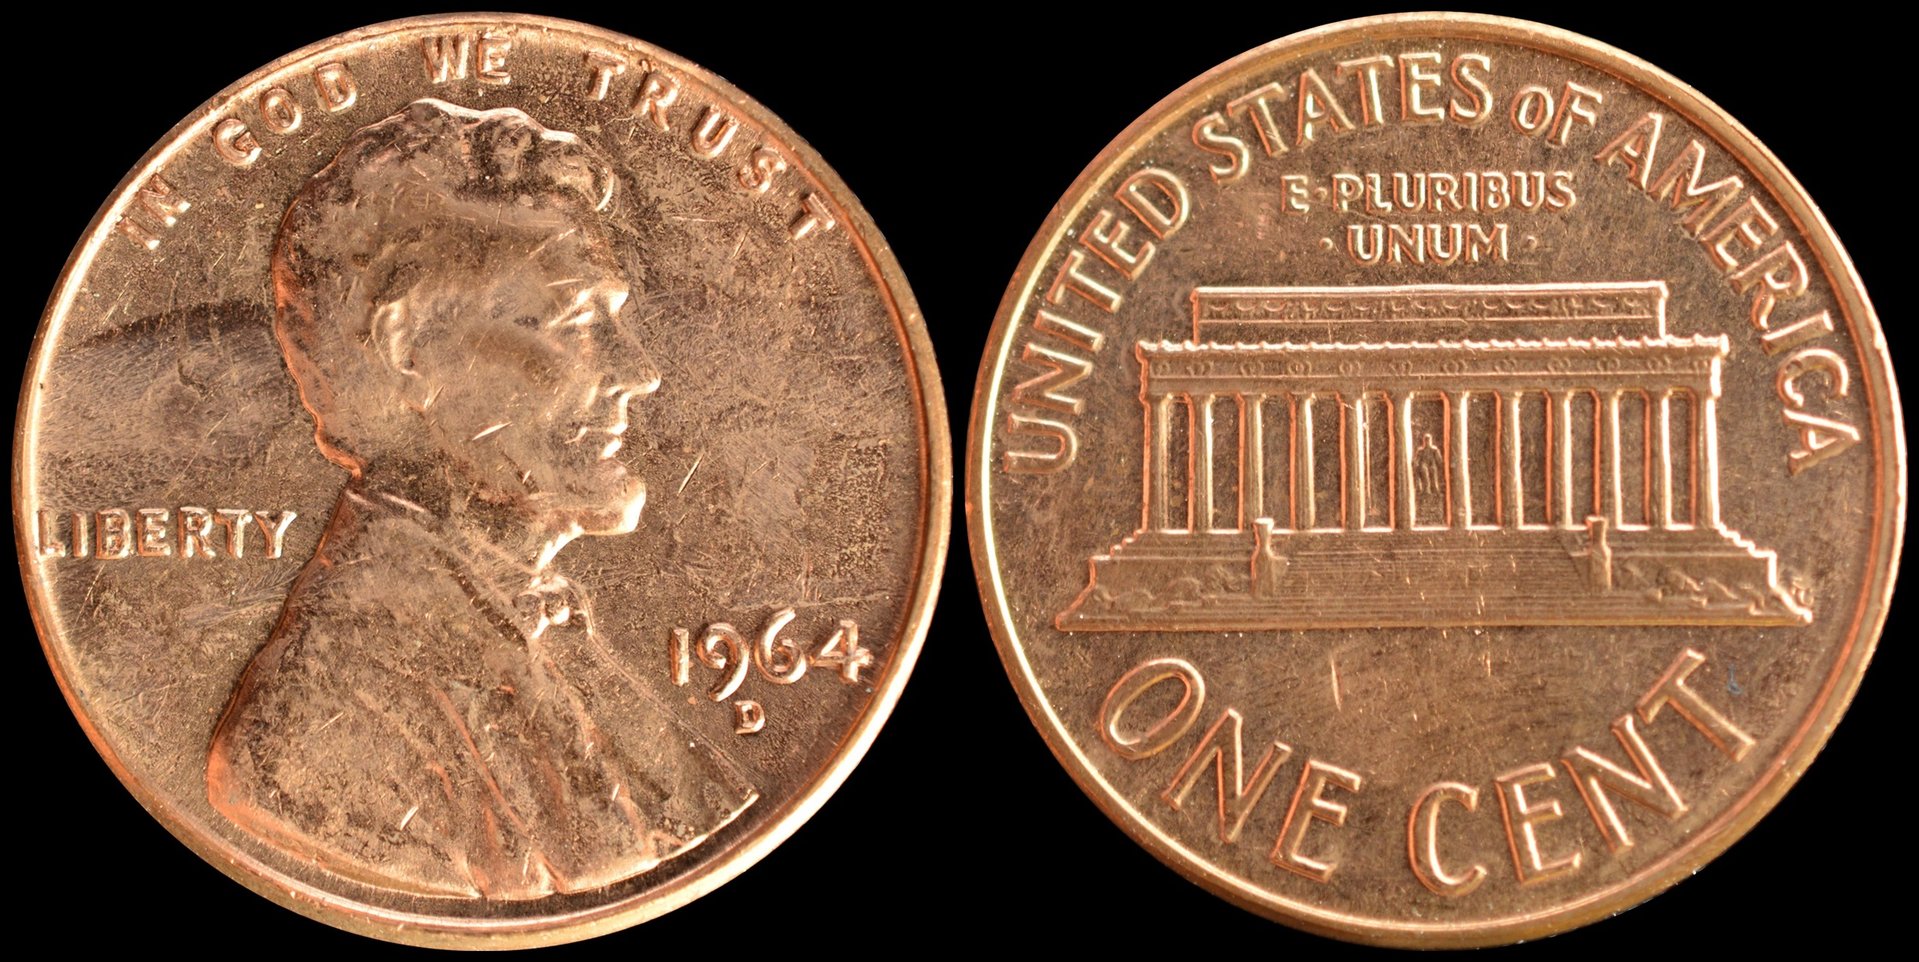 1964D cent a-horz.jpg